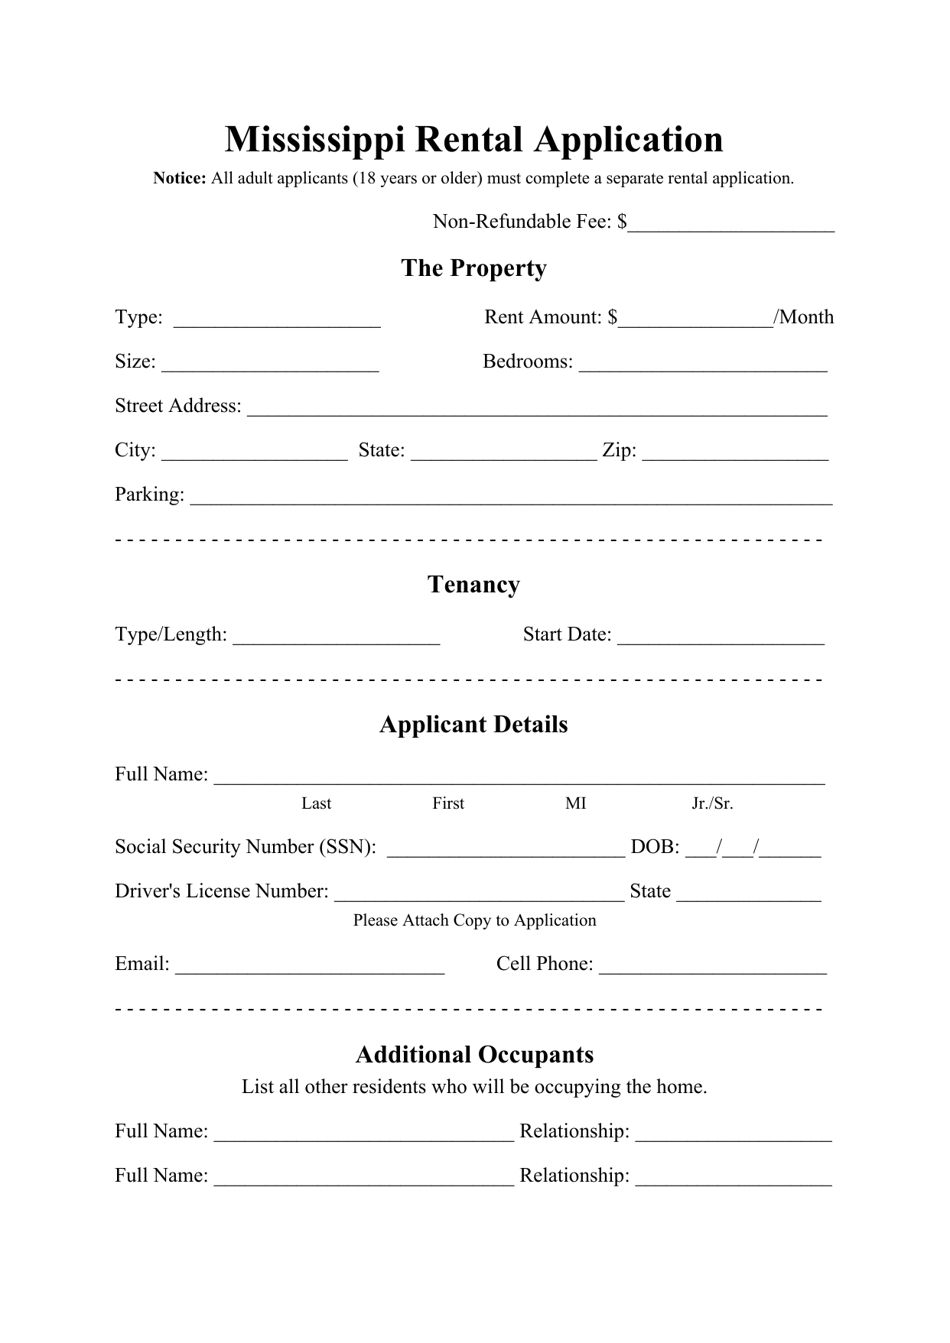 Rental Application Form - Mississippi, Page 1